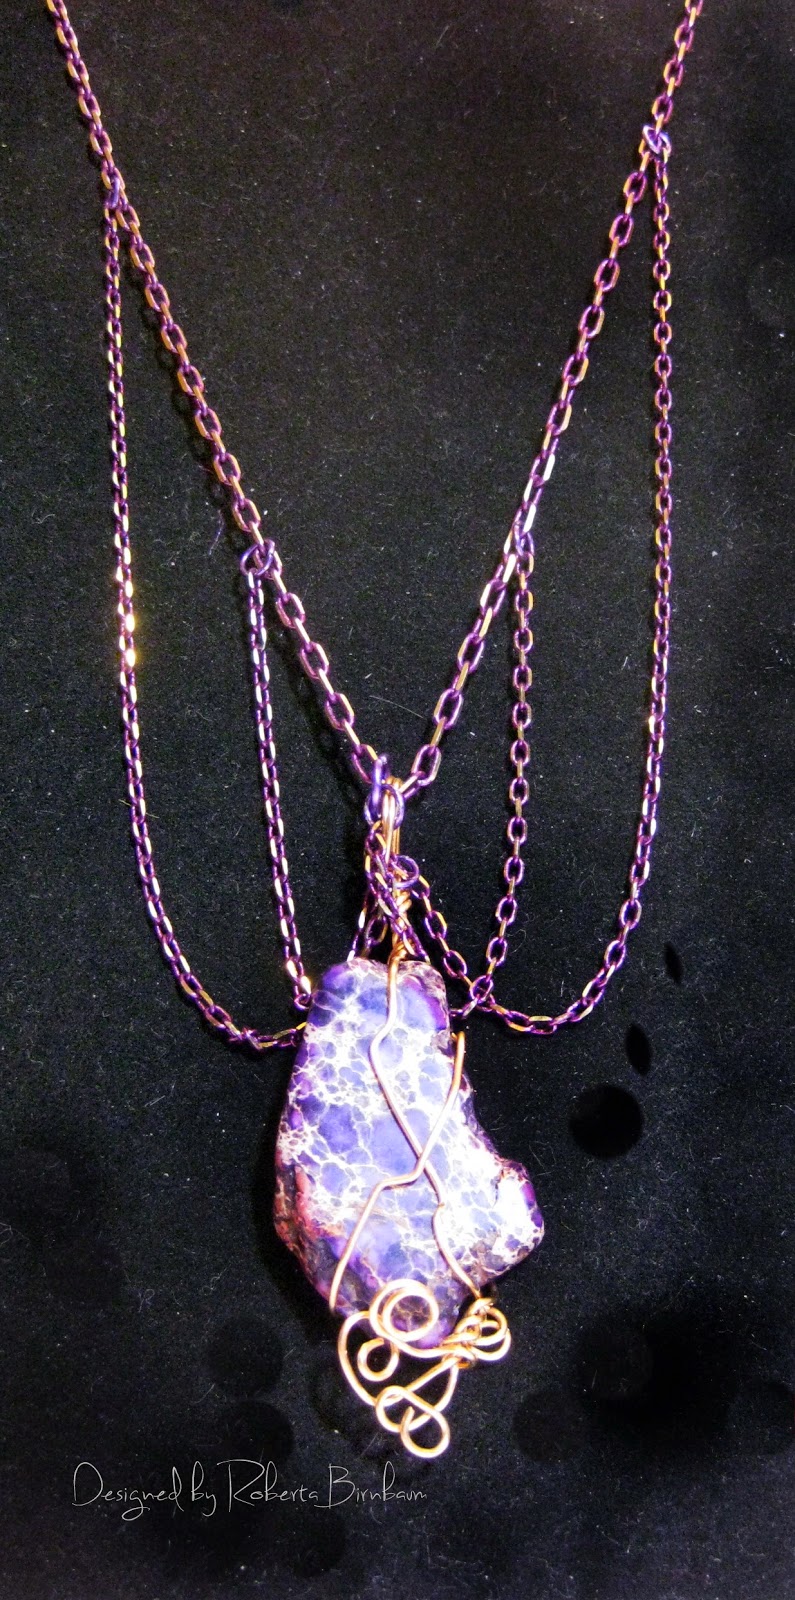 Dazzle-it Neo Chain purple wrapped pendant 1